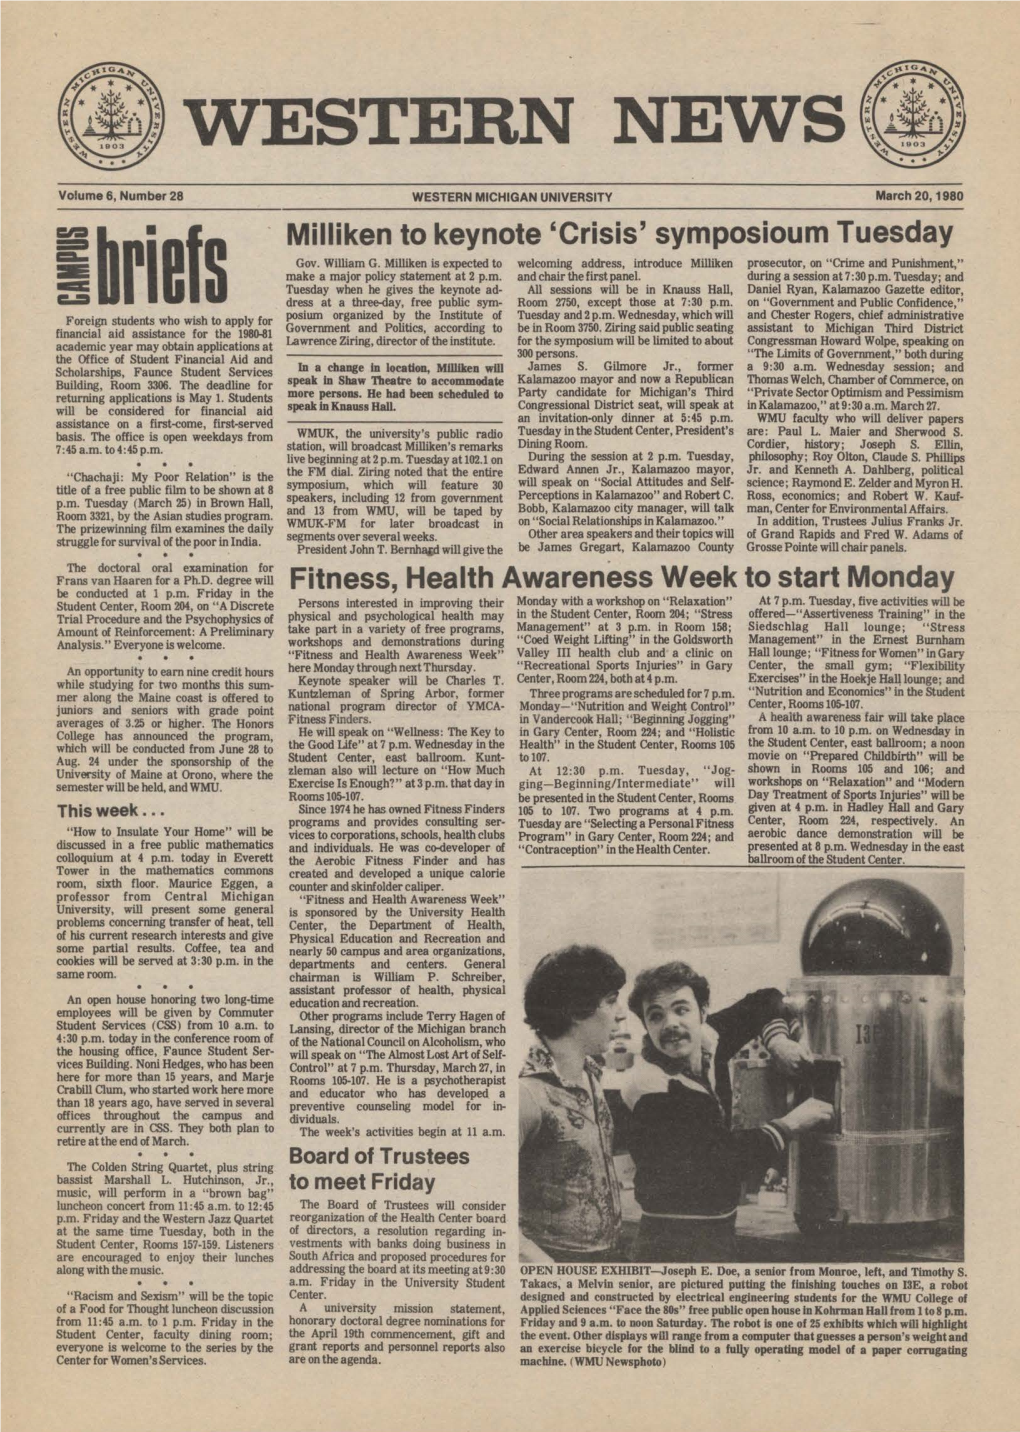 Western News, March 20, 1980